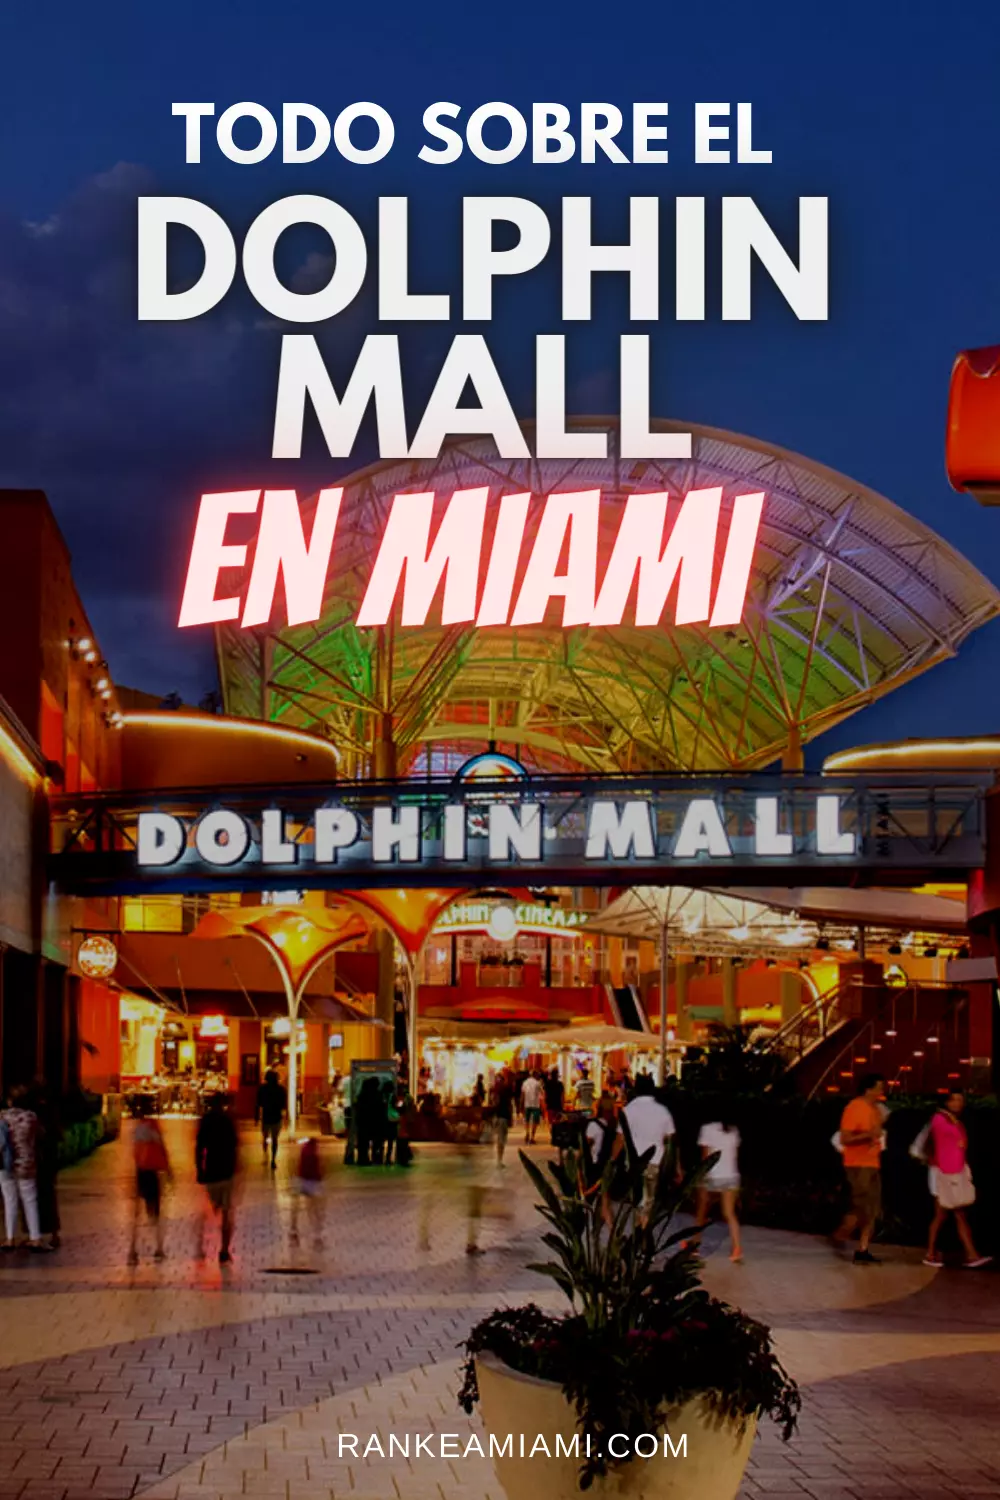 Dolphin Mall - Conoce su ubicación, horarios y tiendas disponibles